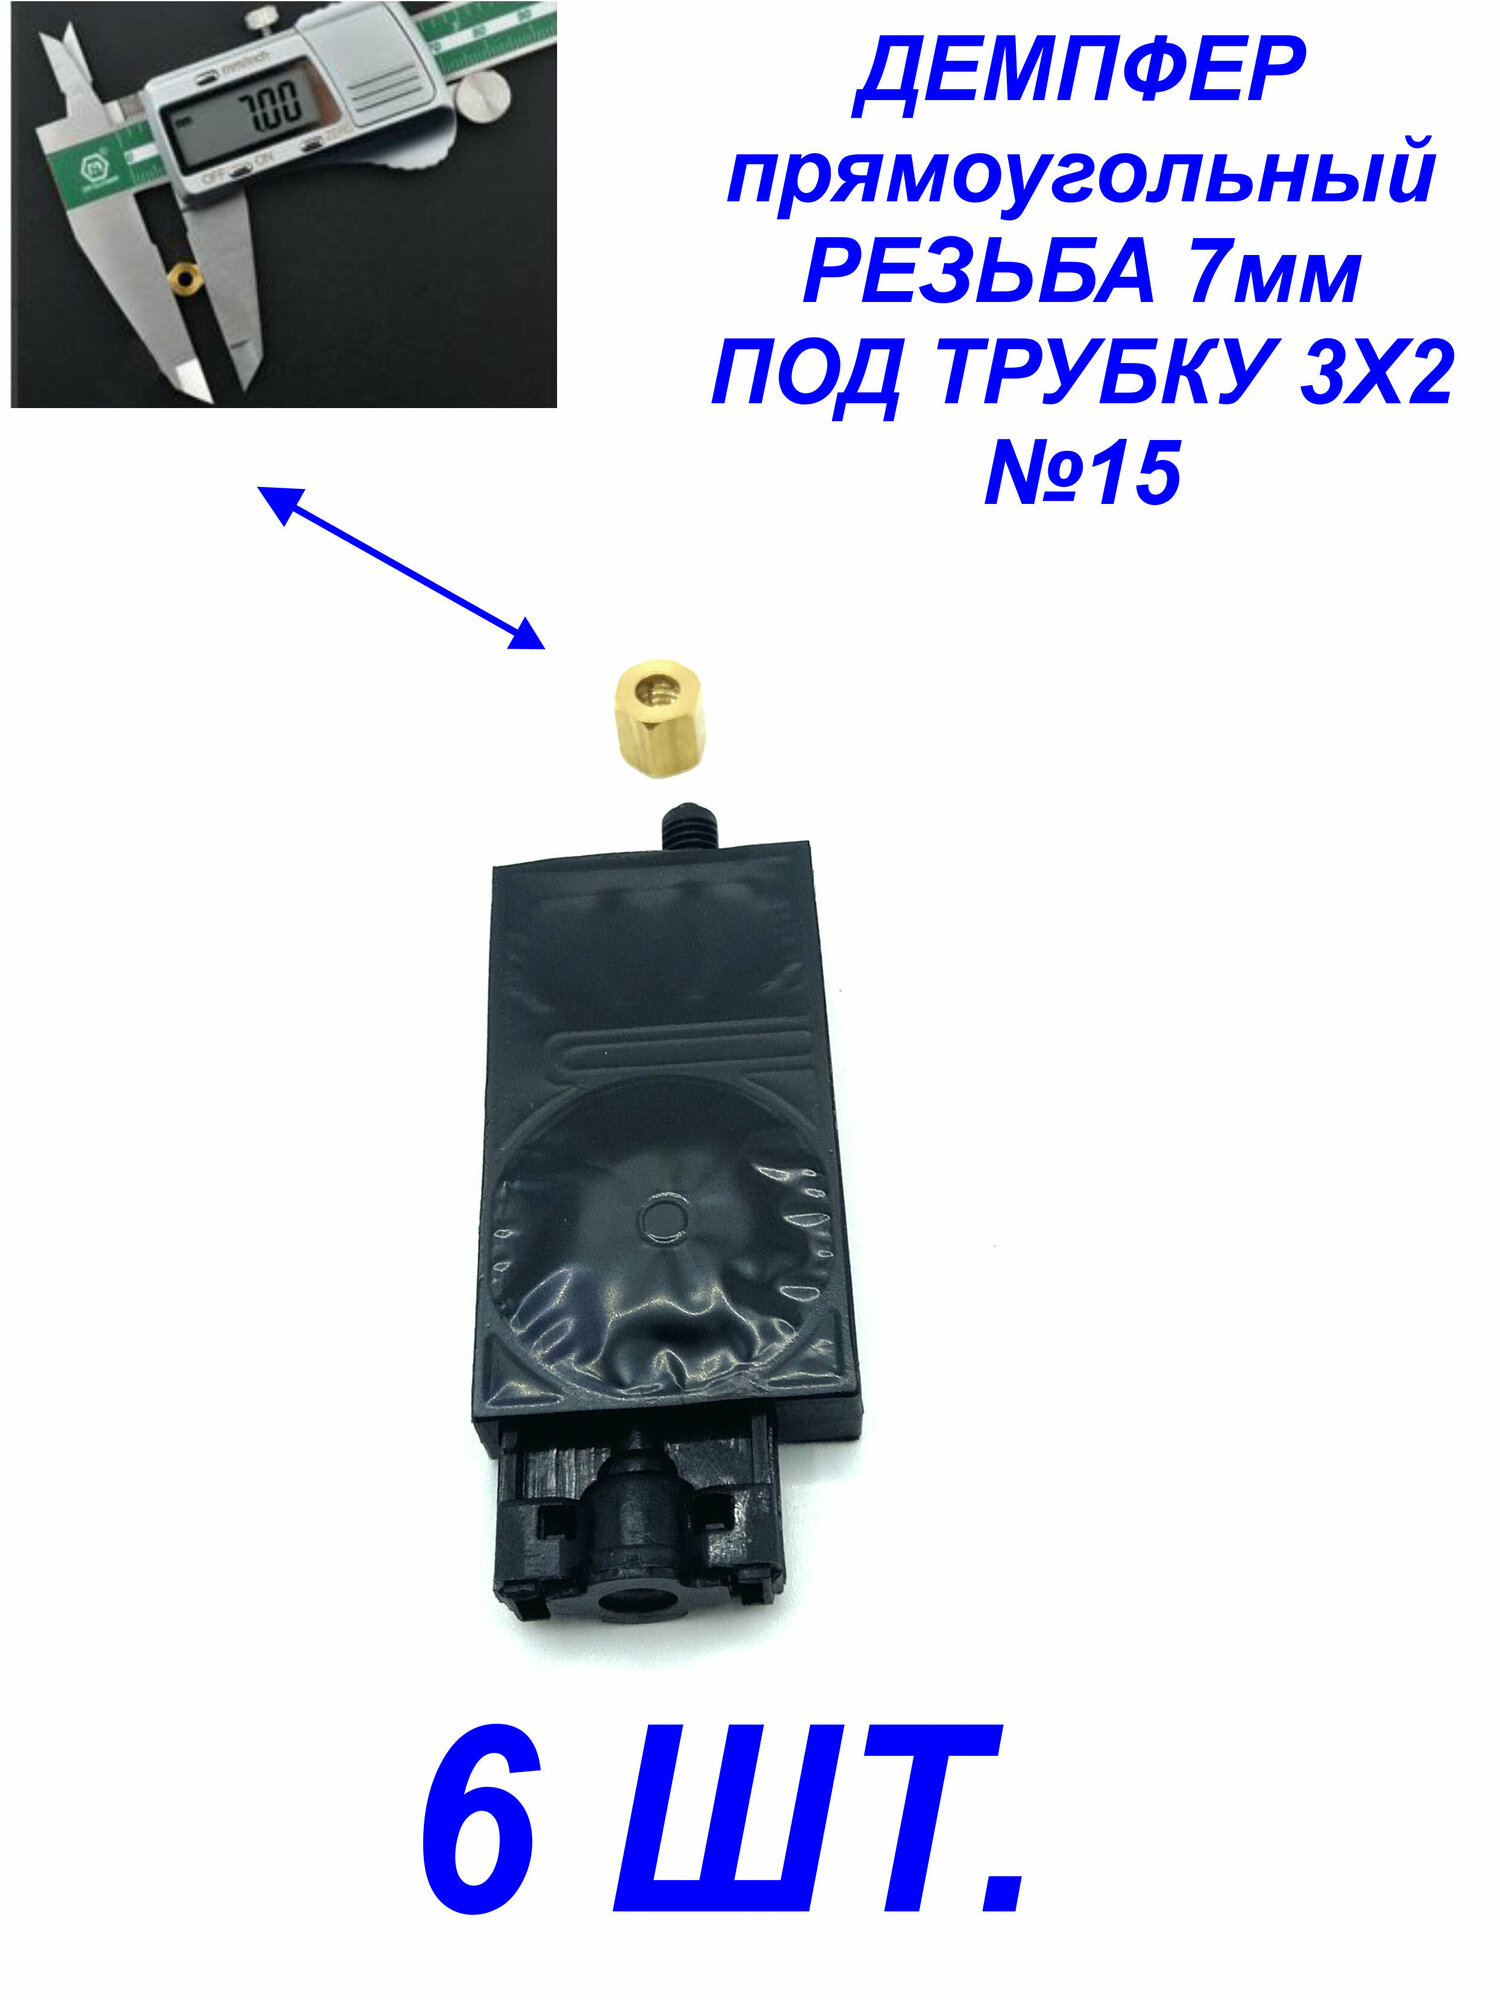 Демпфер№15 6шт. для принтеров DX5 TX800 XP600 Mimaki TS3 JV33 CJV30 TS5 JV2 Galaxy для УФ чернил под трубки 3 мм диаметром, прямоугольный.